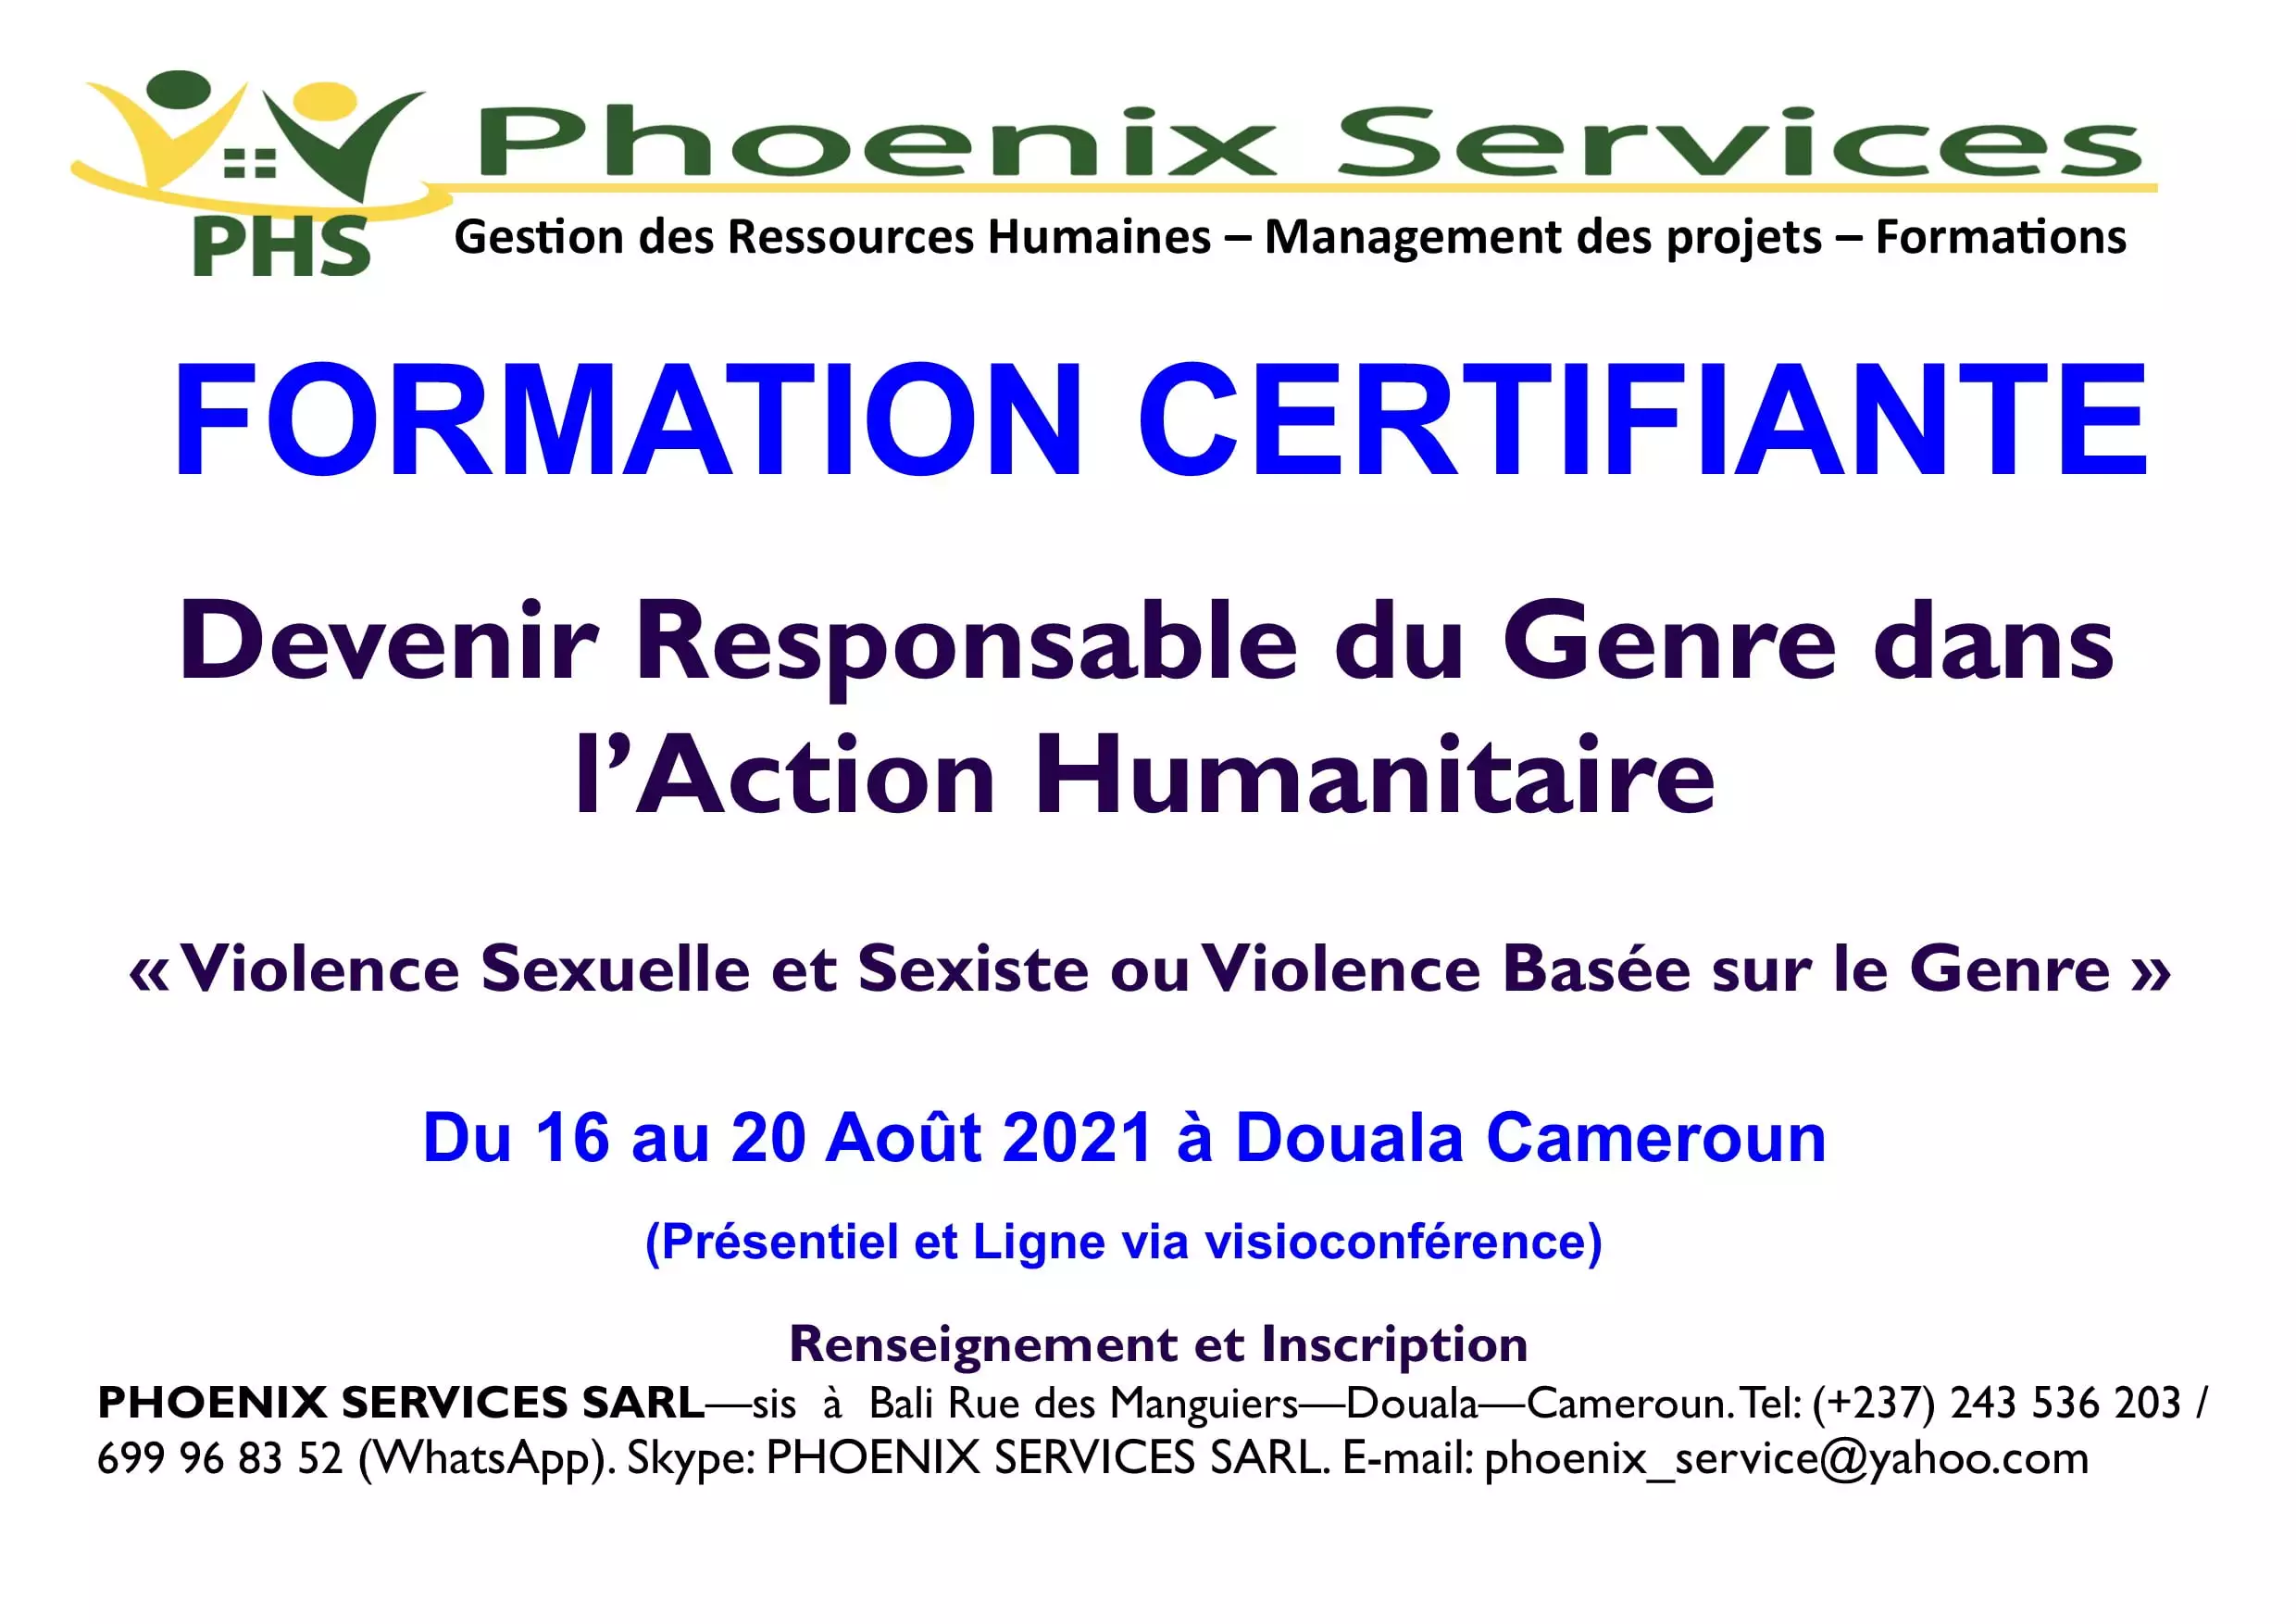 Formation Certifiante: Devenir Responsable du Genre dans l’Action Humanitaire